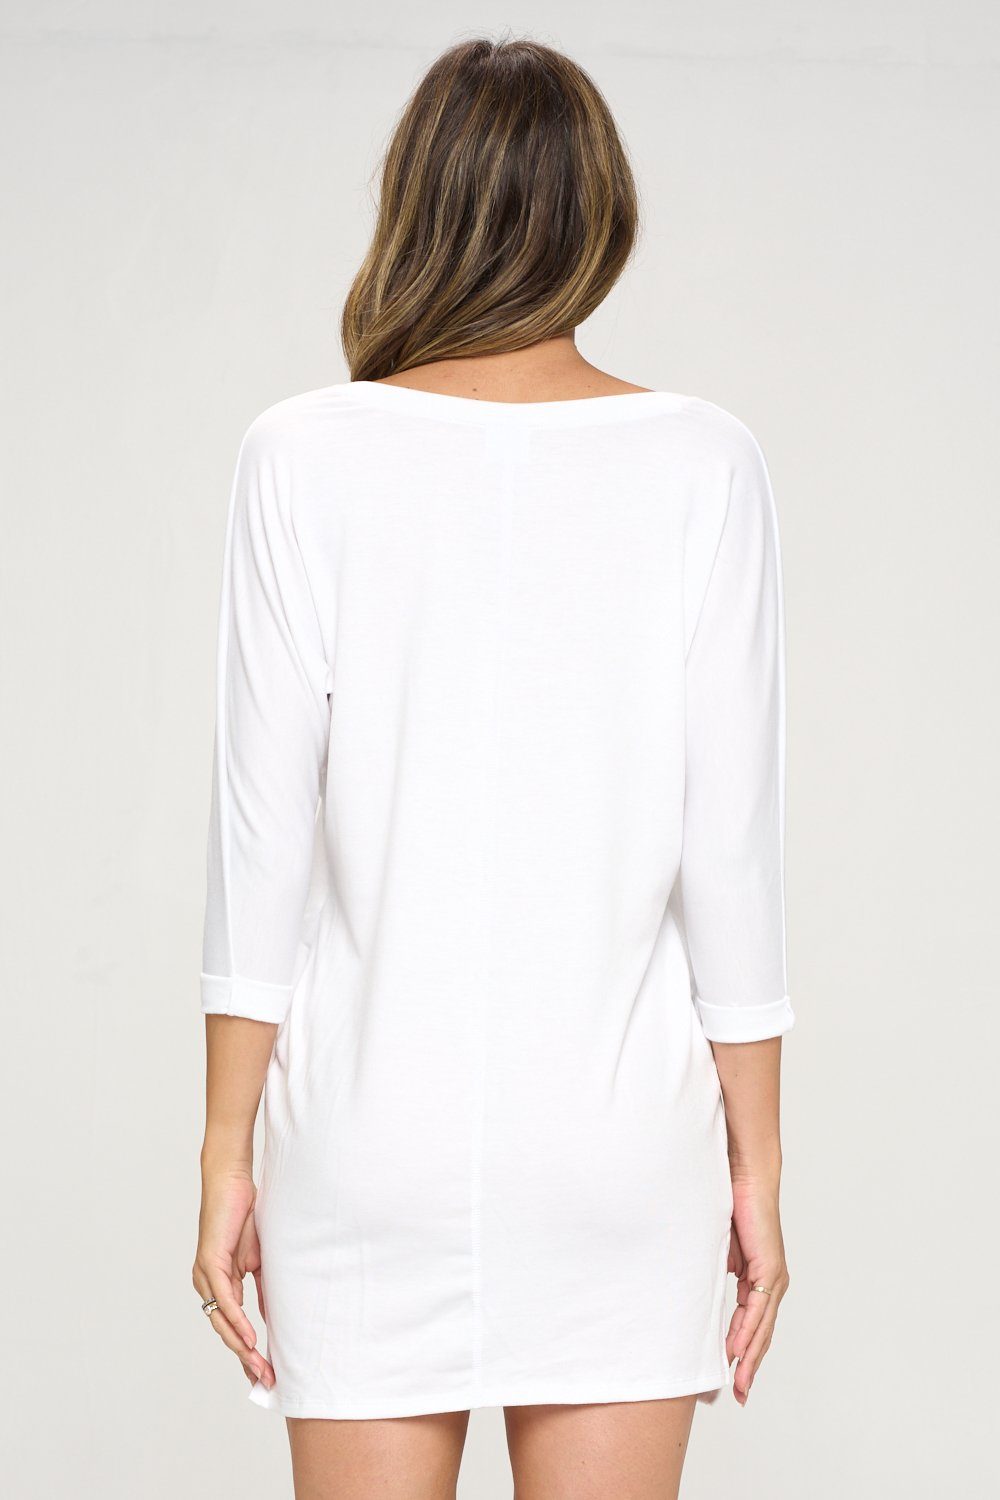 Tori - White Dolman Long Sleeve Dress by EVCR